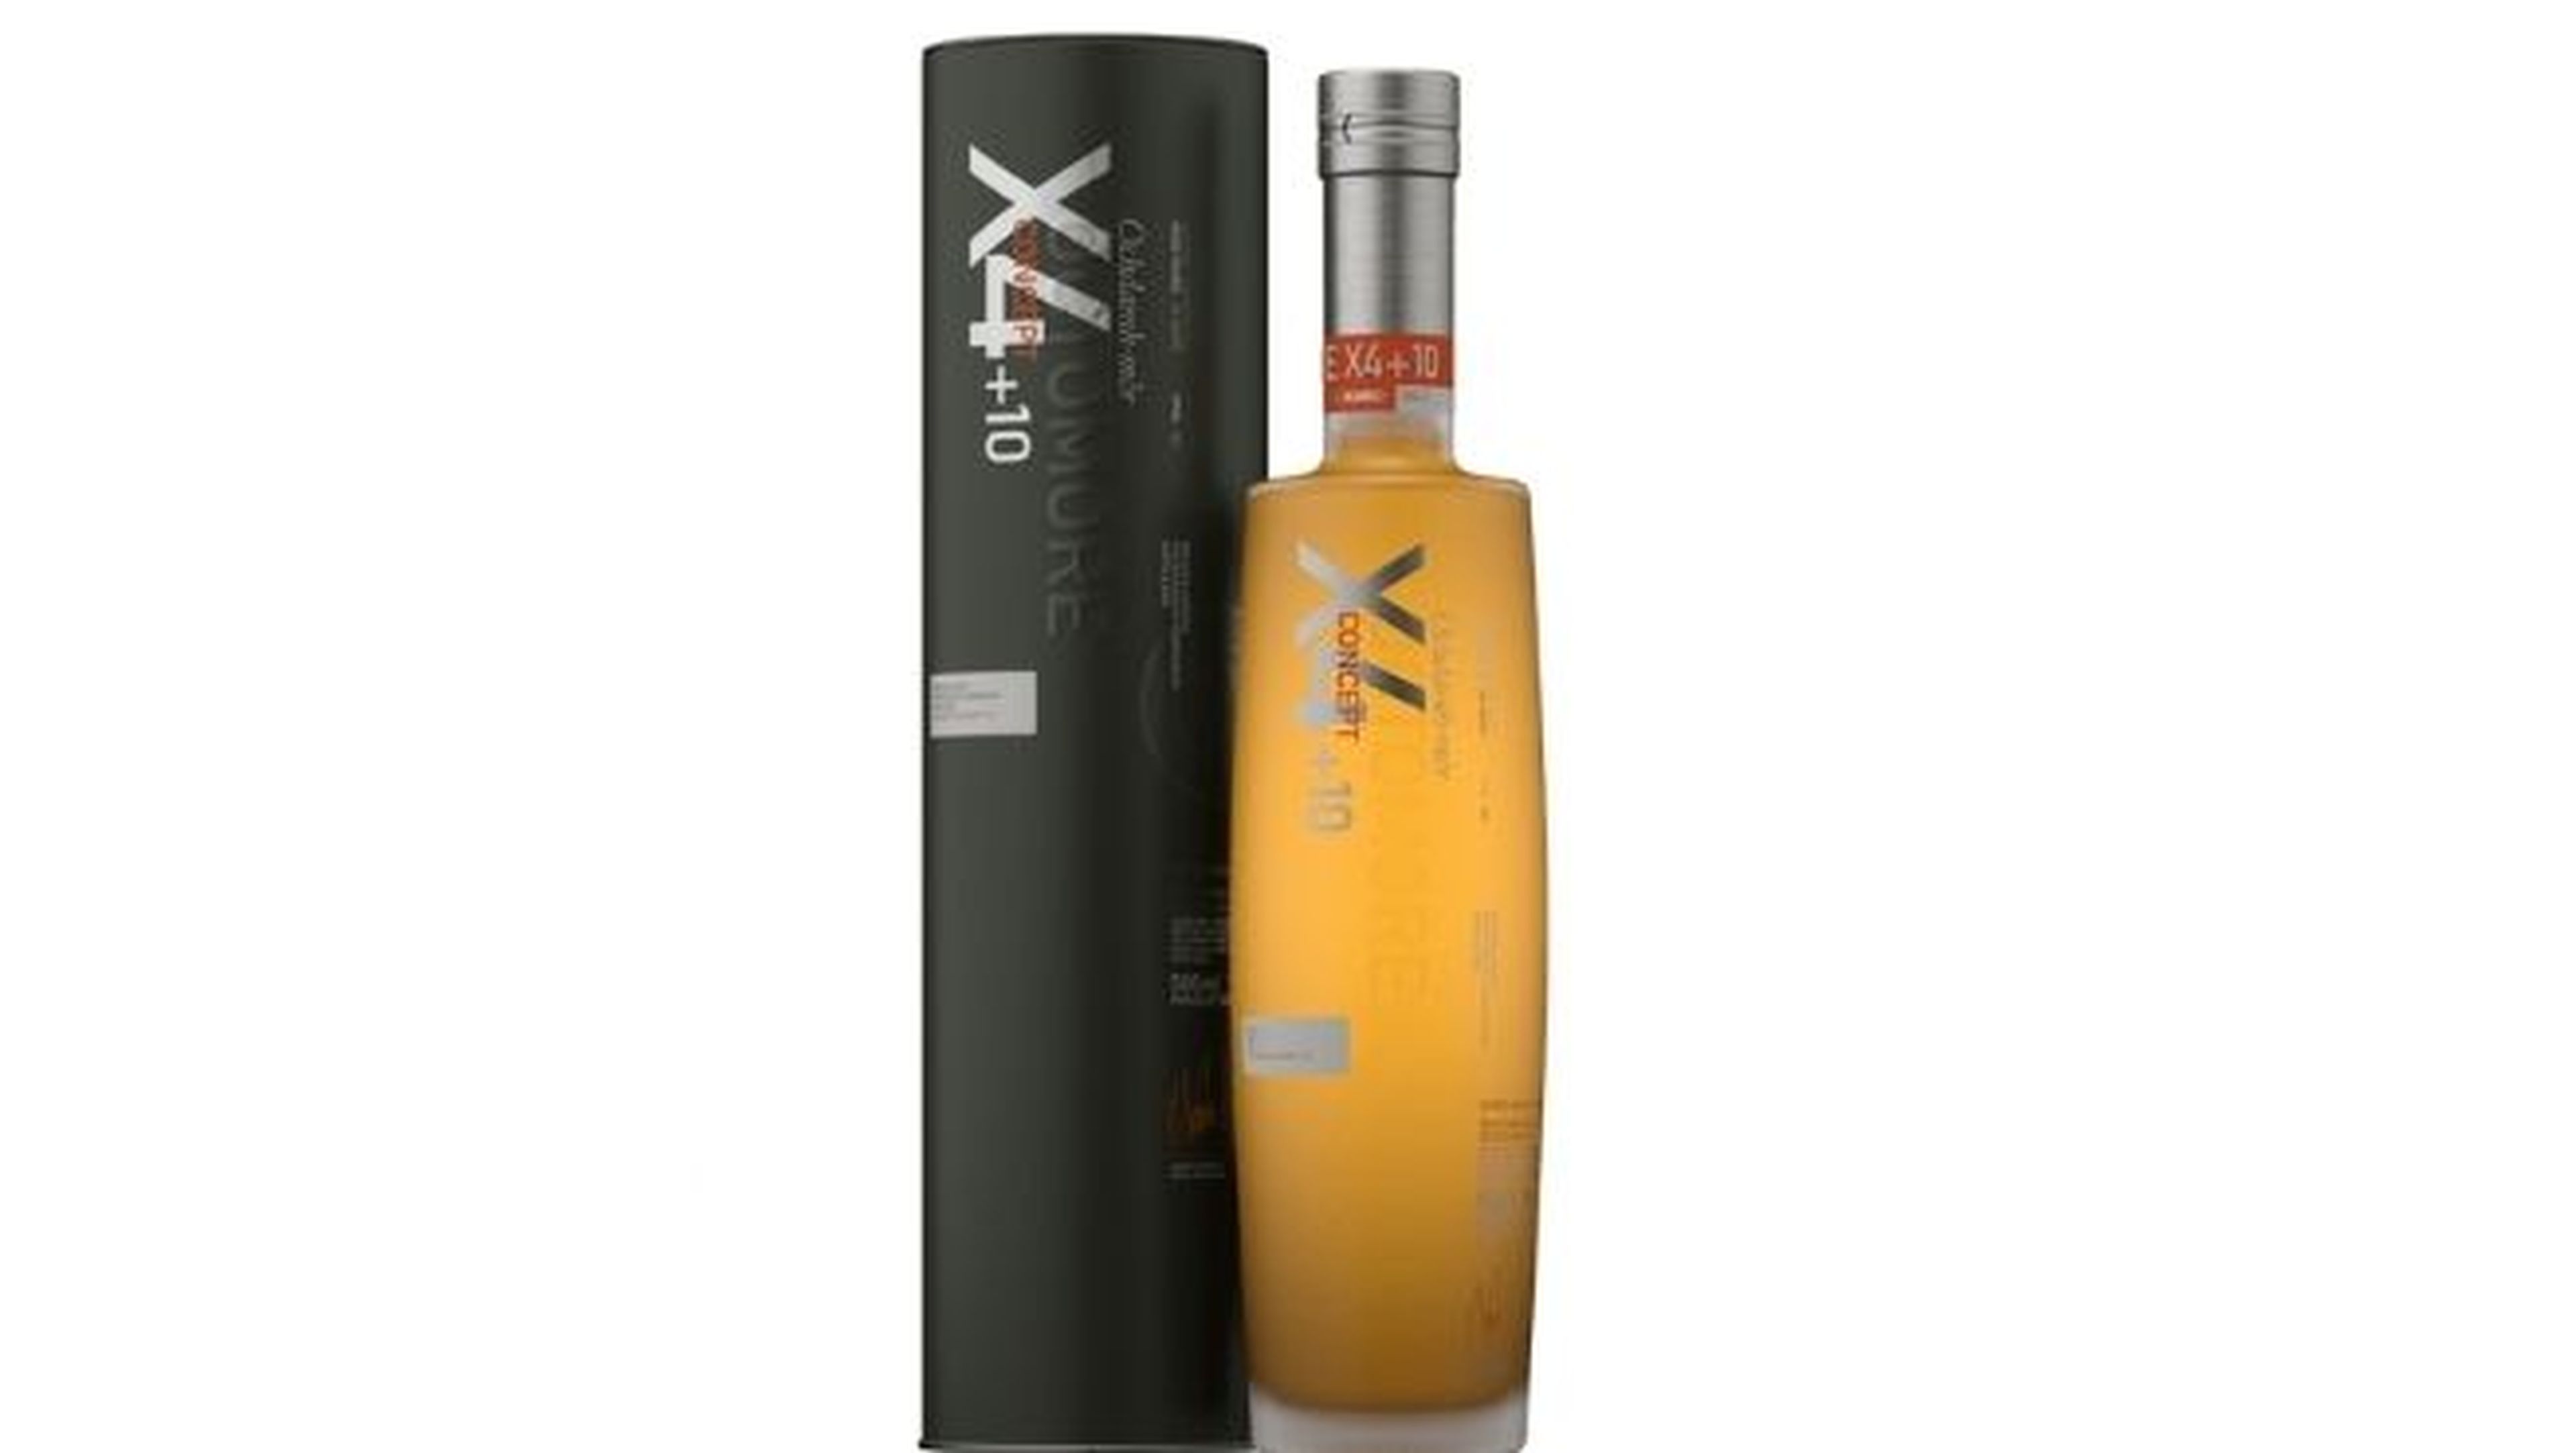 Whisky Bruichladdich X4 (Bruichladdich)